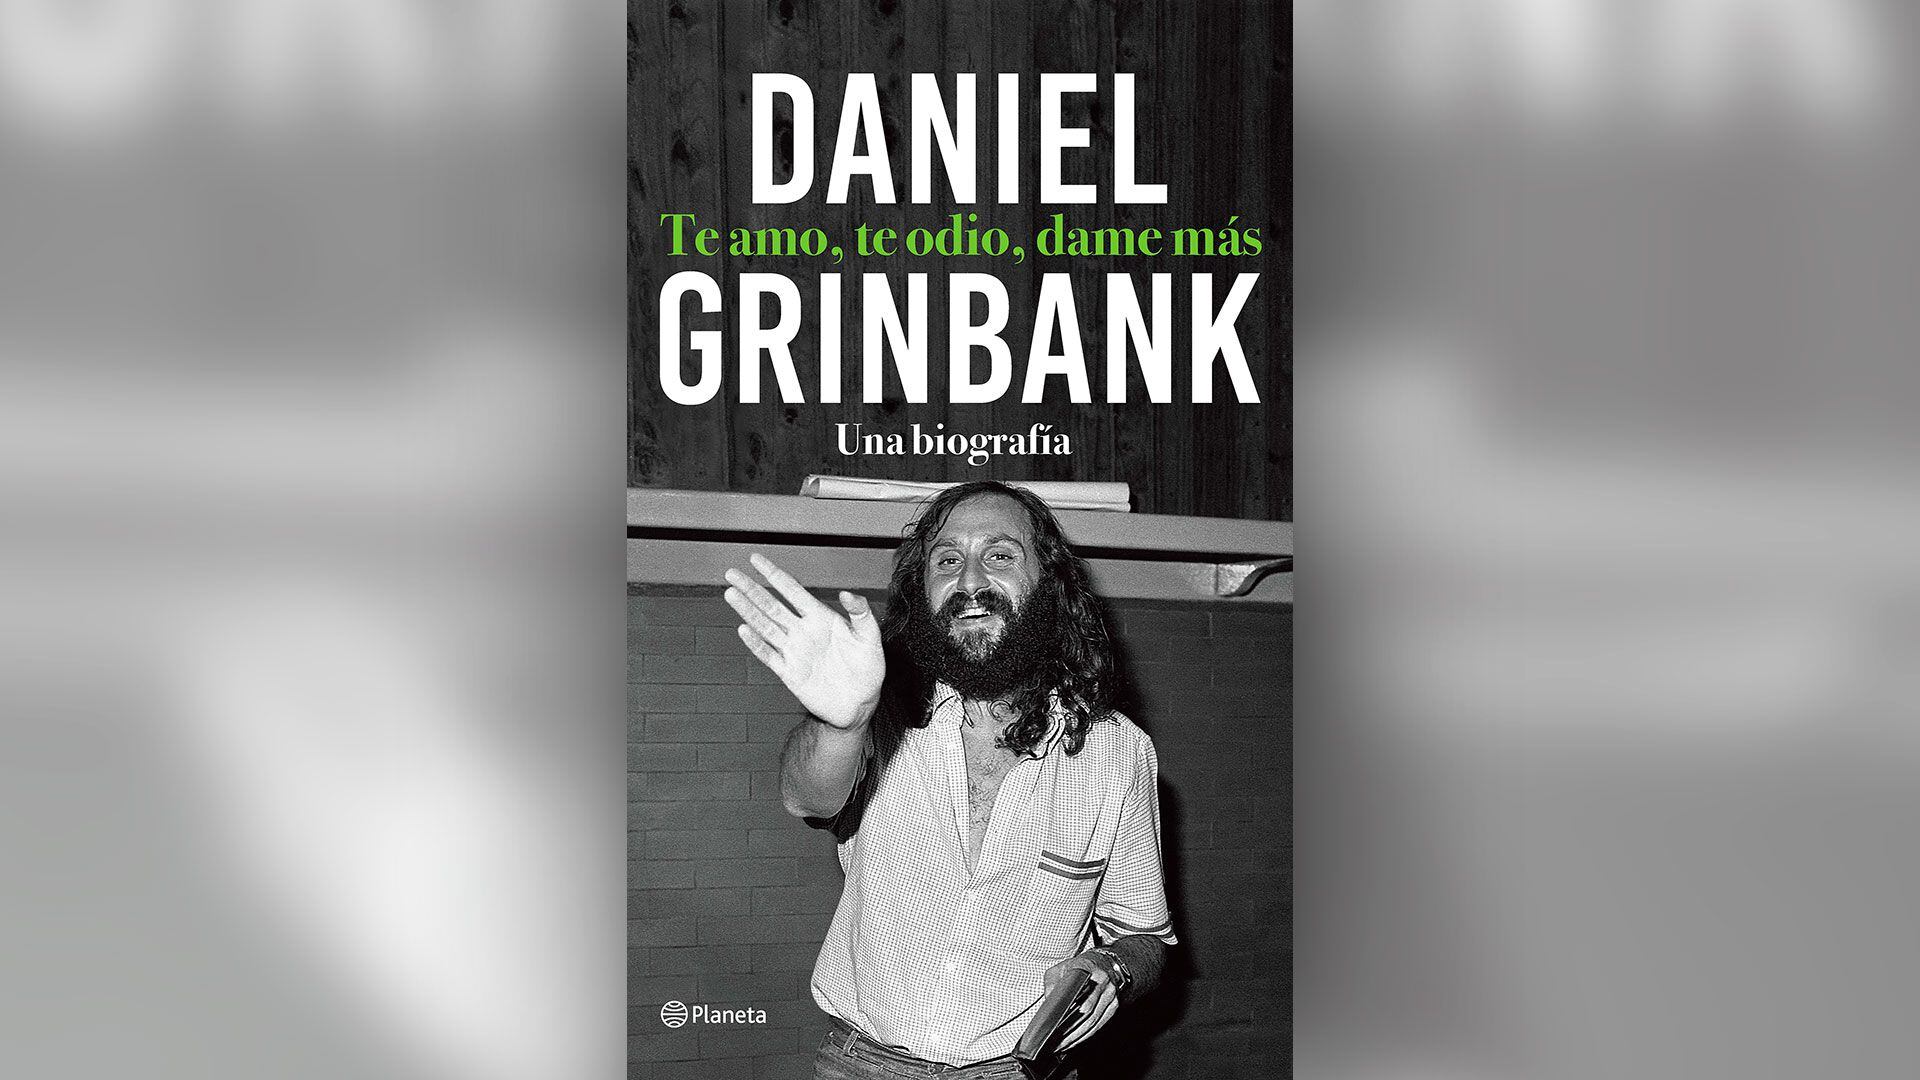 Portada de "Te amo, te odio, dame más", biografía de Daniel Grinbank editada por Planeta.